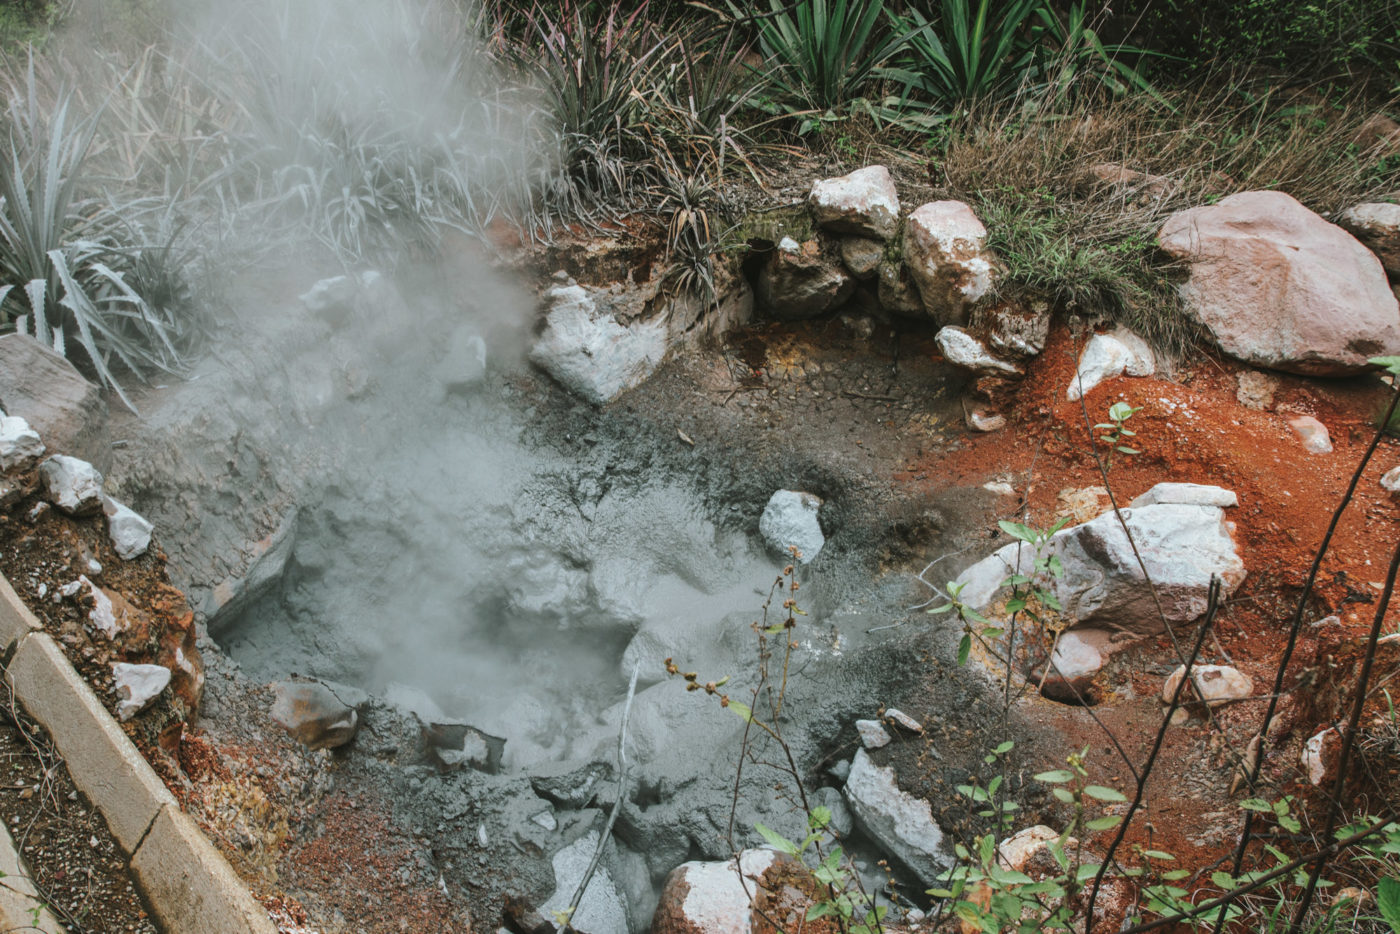 Boiling mud pots at Rincon de la Vieja National Park